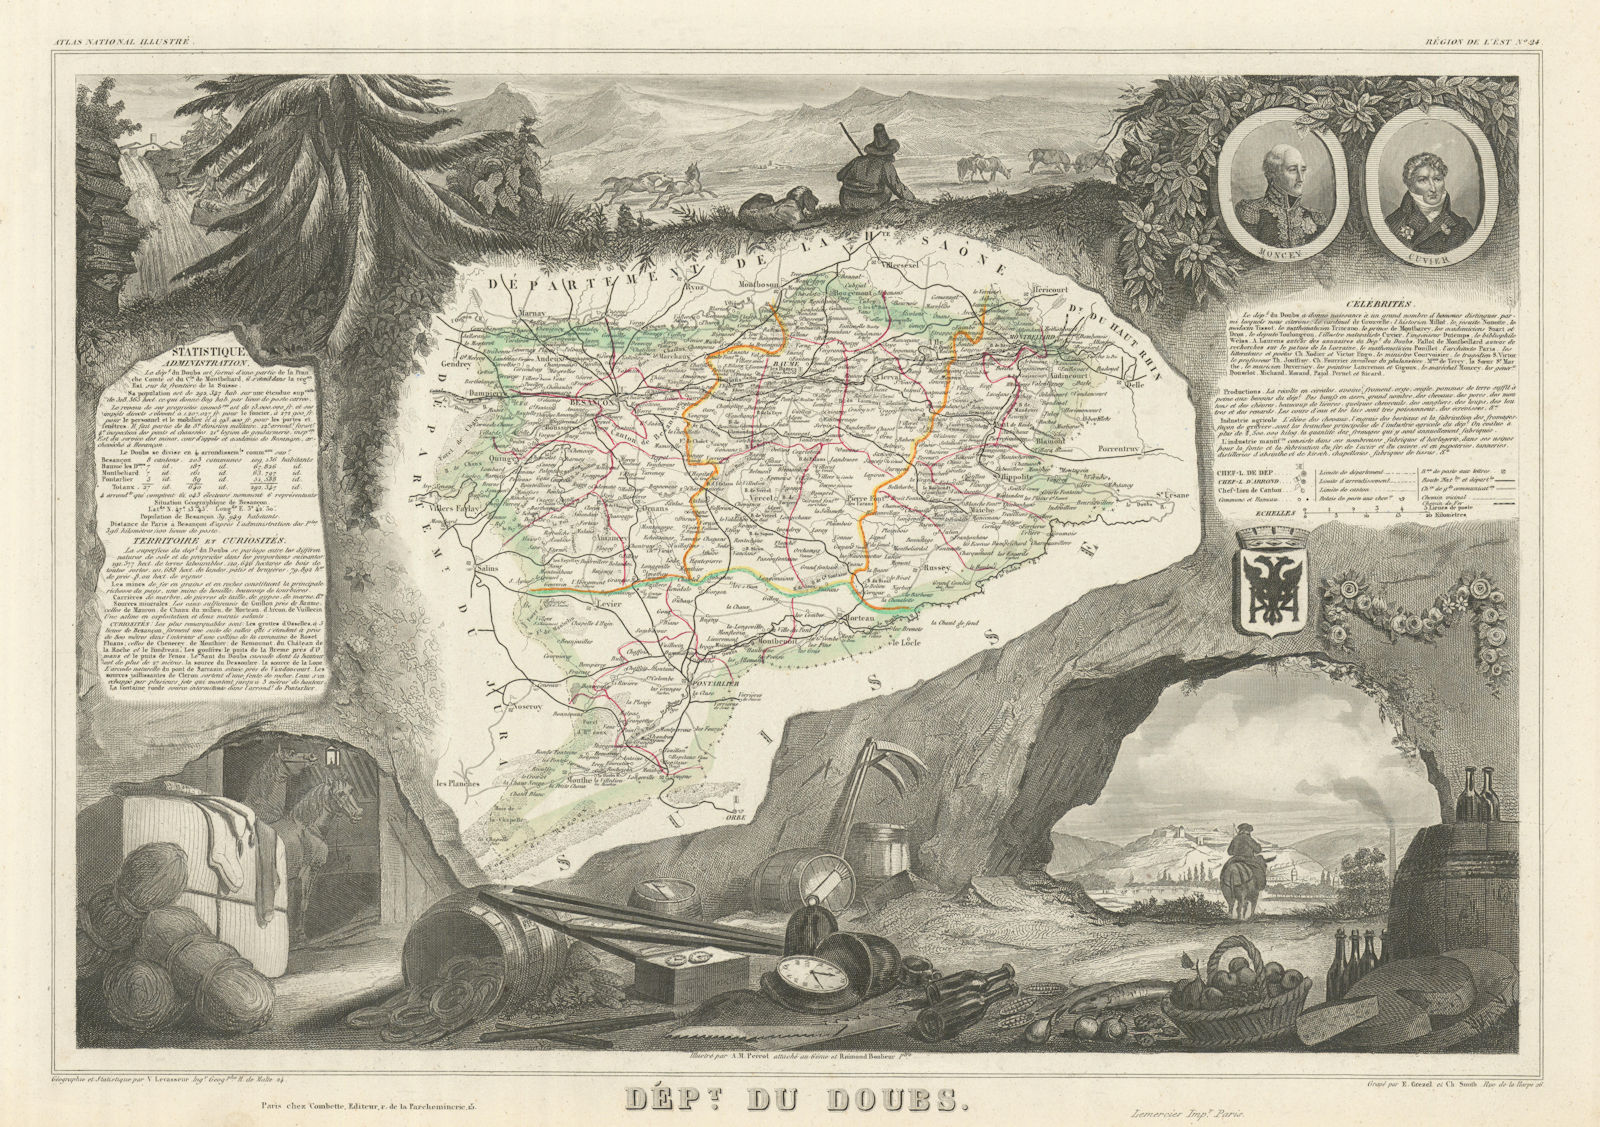 Associate Product Département du DOUBS. Decorative antique map/carte by Victor LEVASSEUR 1856